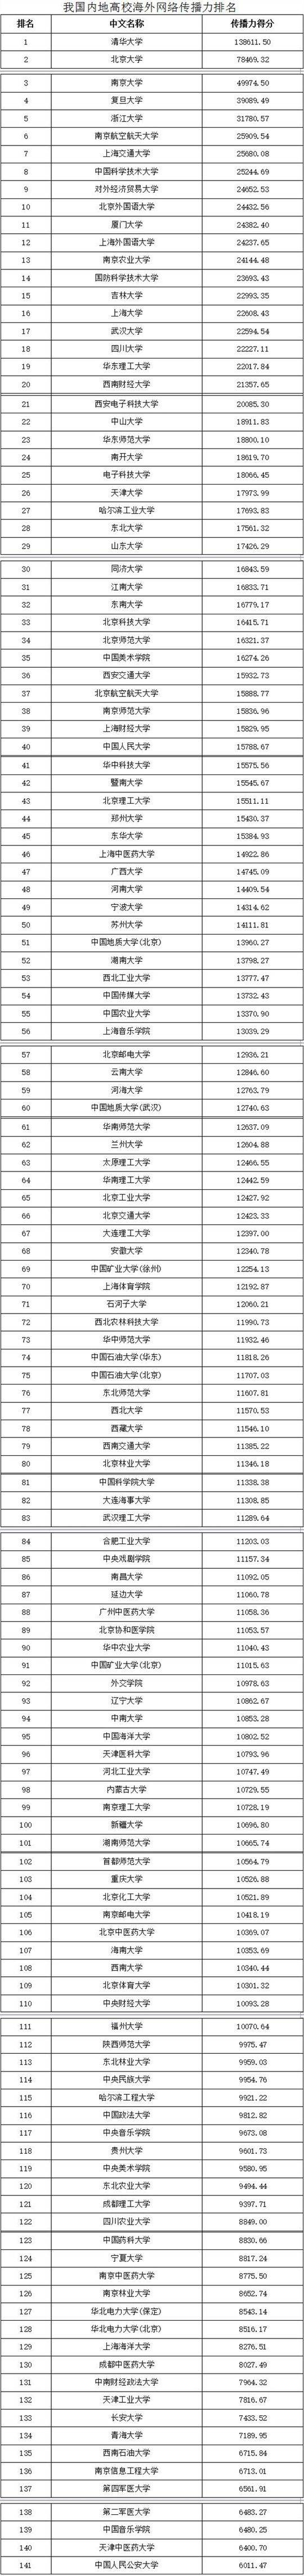 中国大学海外网络传播力出炉 141所内地高校上榜